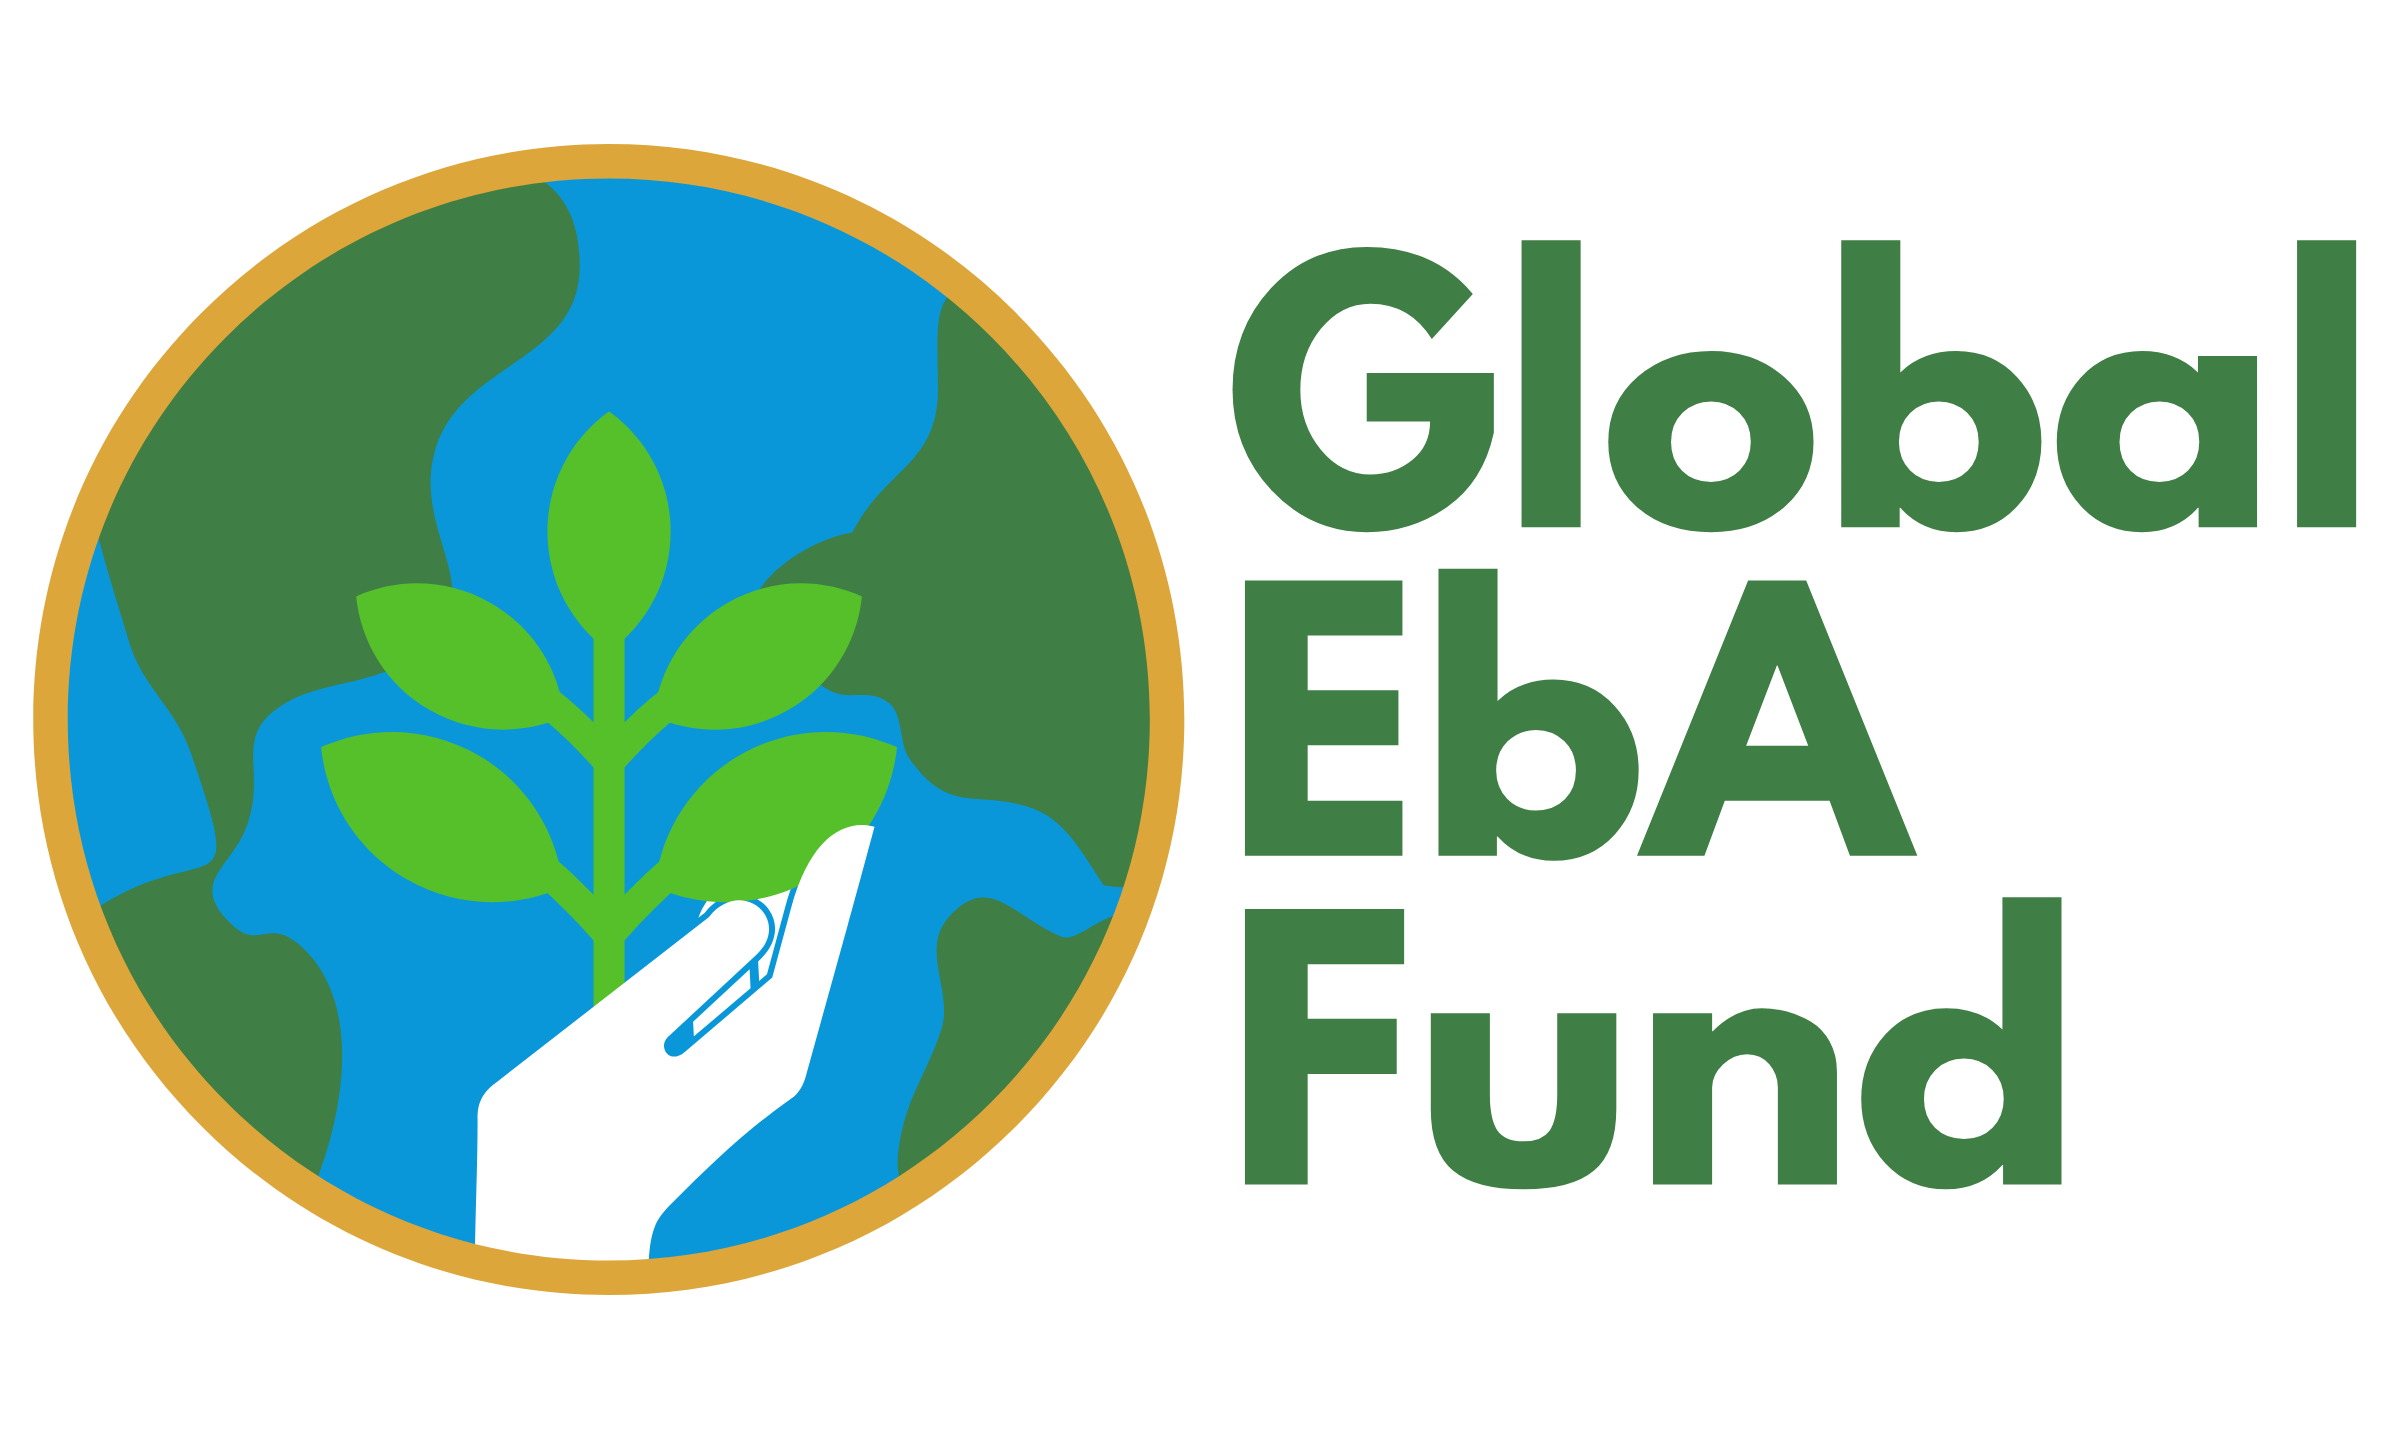 Global EbA Fund logo